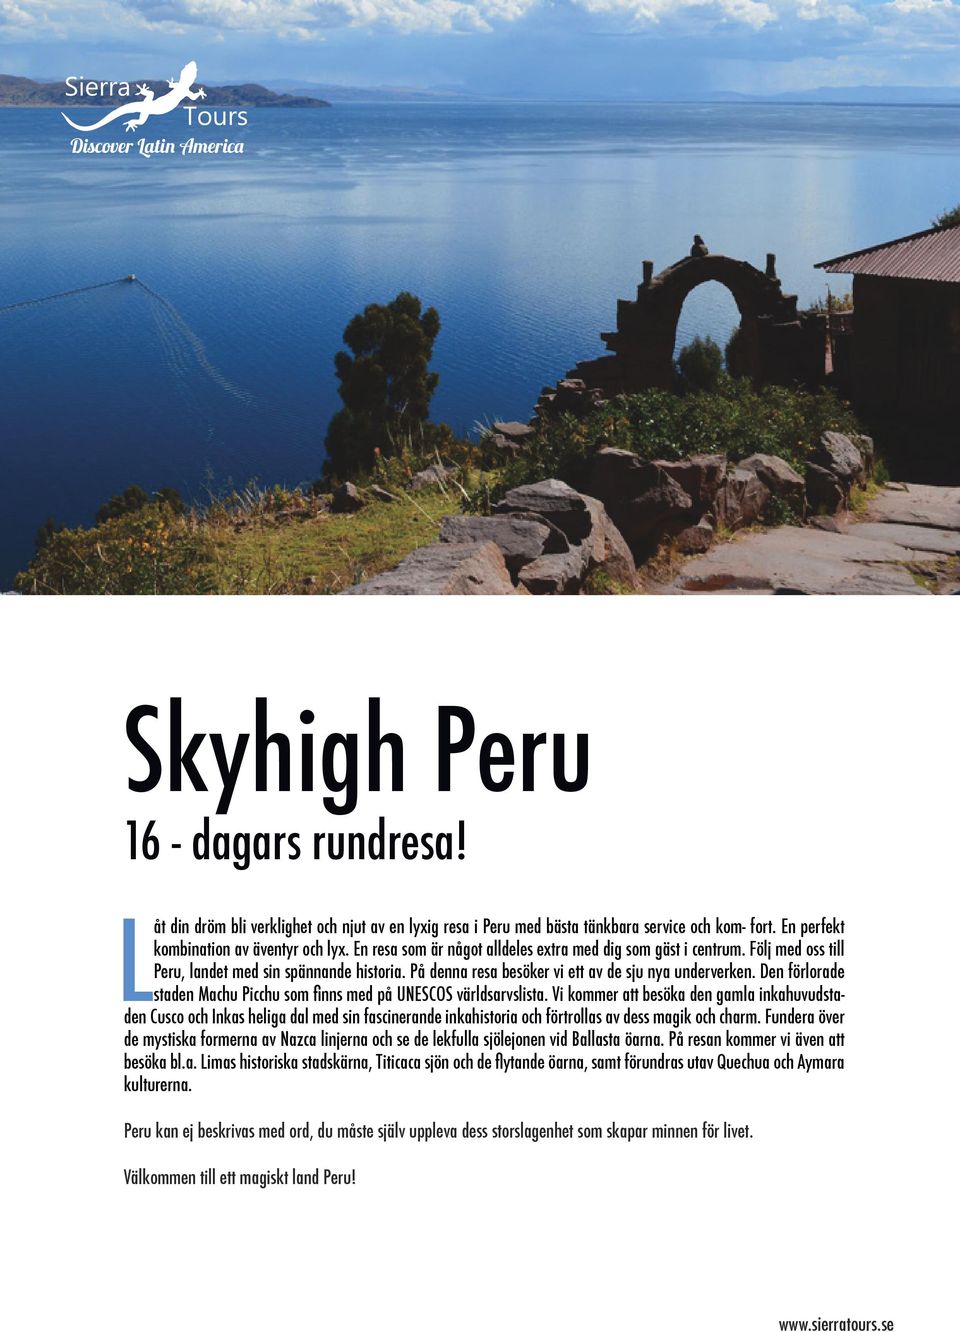 Den förlorade staden Machu Picchu som finns med på UNESCOS världsarvslista.